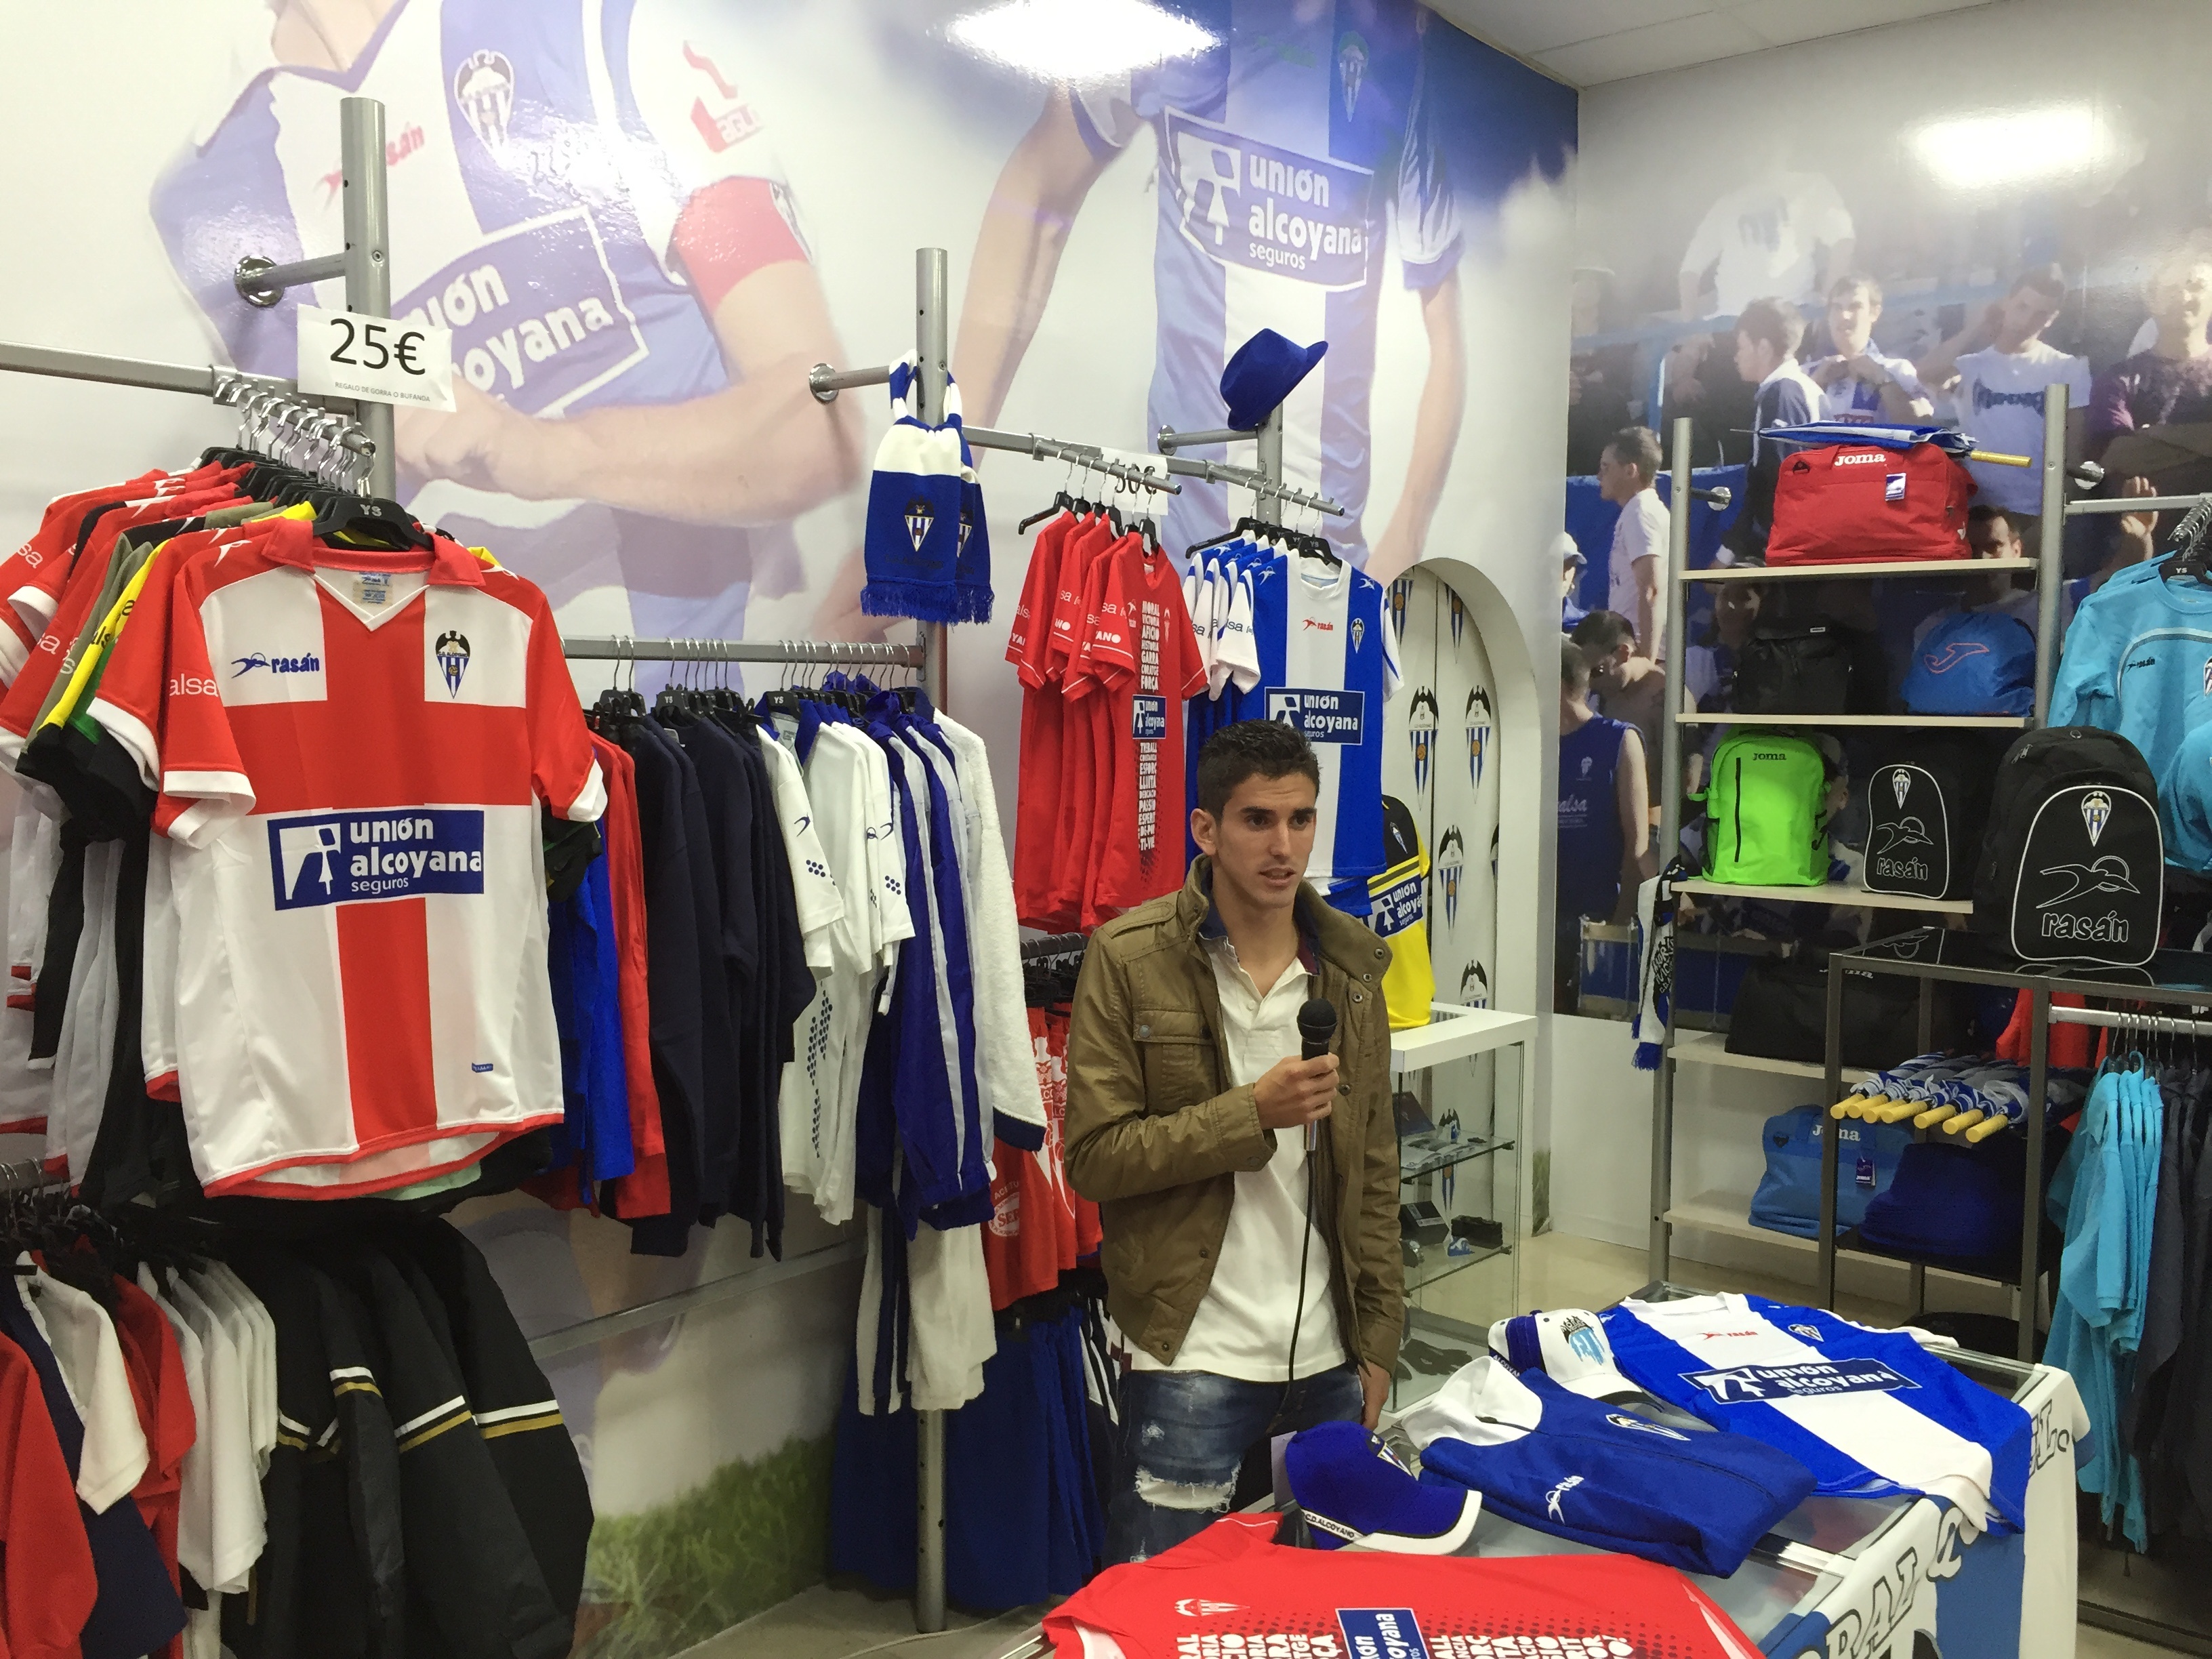 El centrocampista del Alcoyano, Jesús Alfaro, en rueda de prensa en la tienda oficial del club. CDAlcoyano